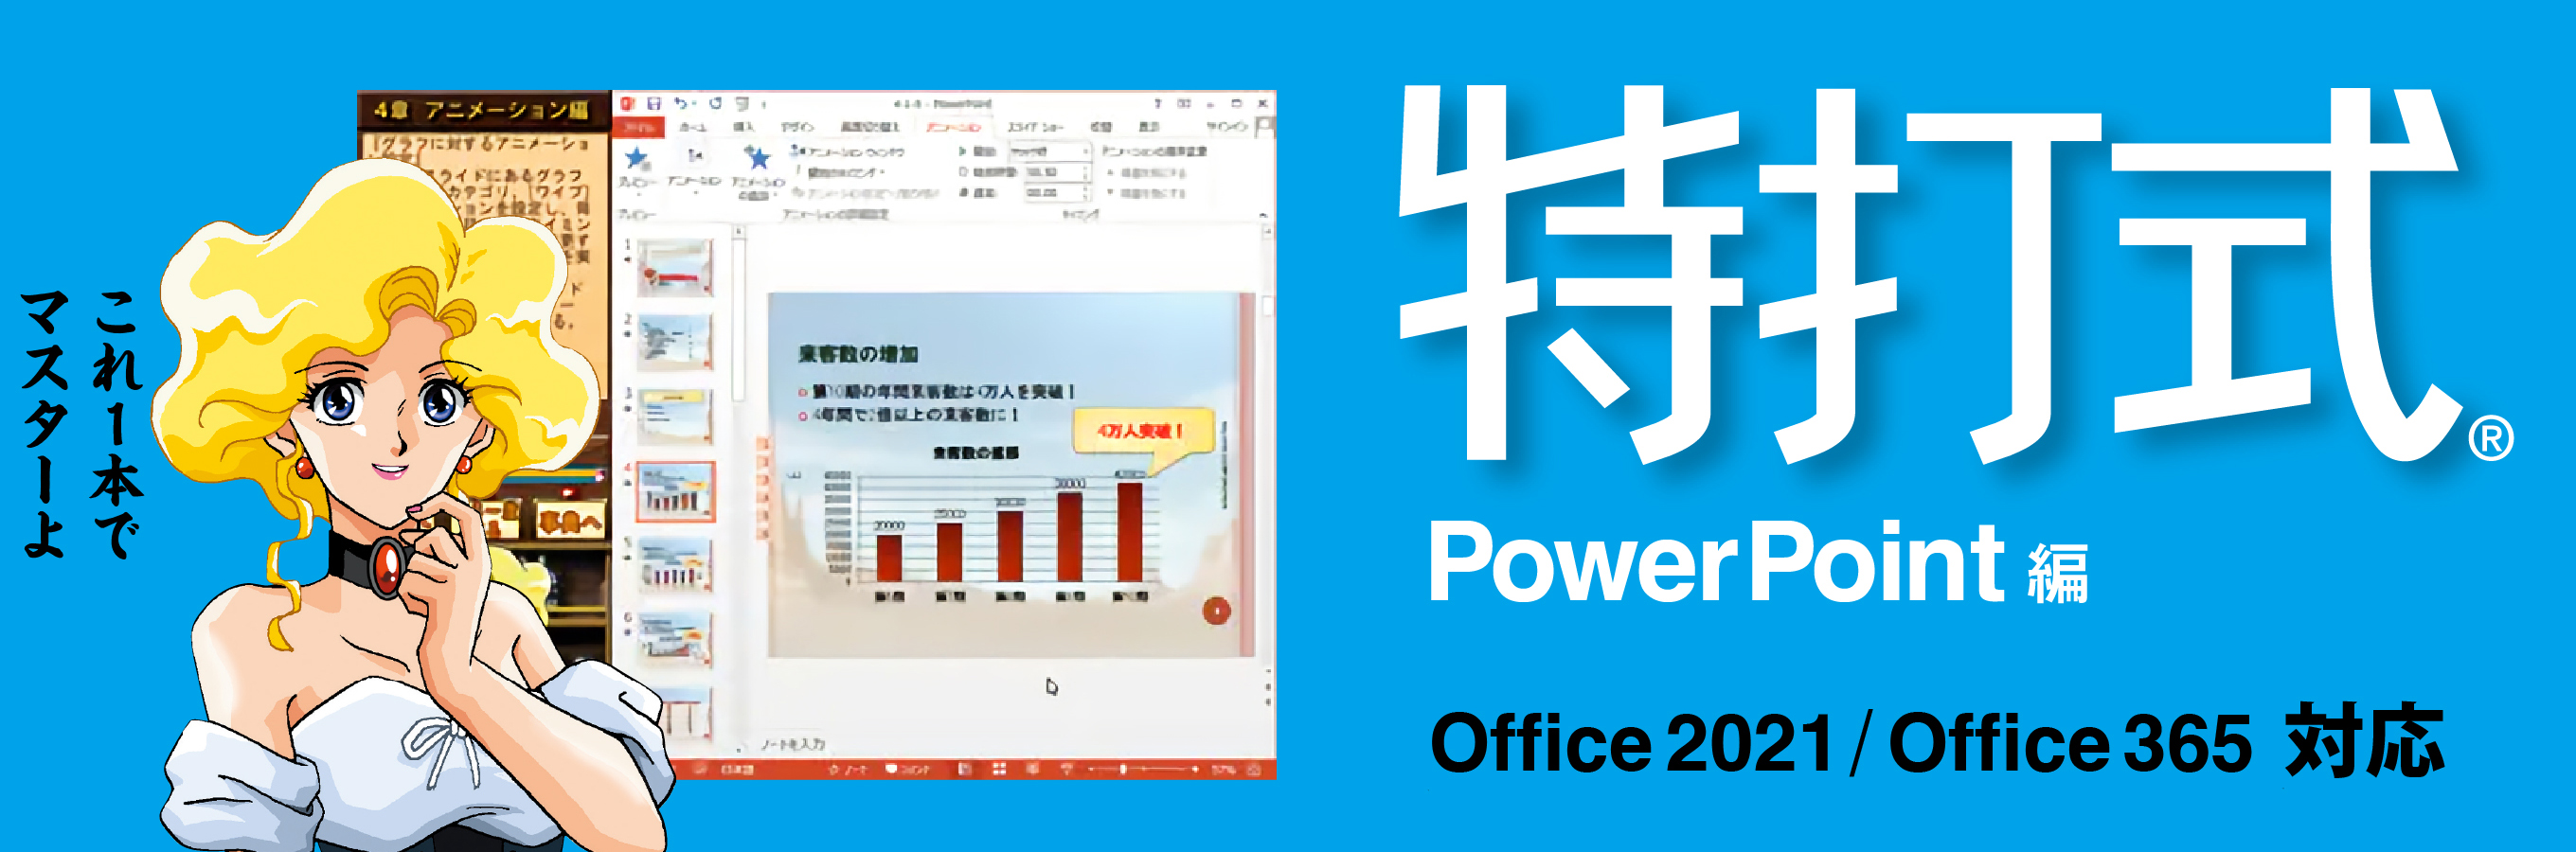 最新版Office 2021対応「特打式PowerPoint」